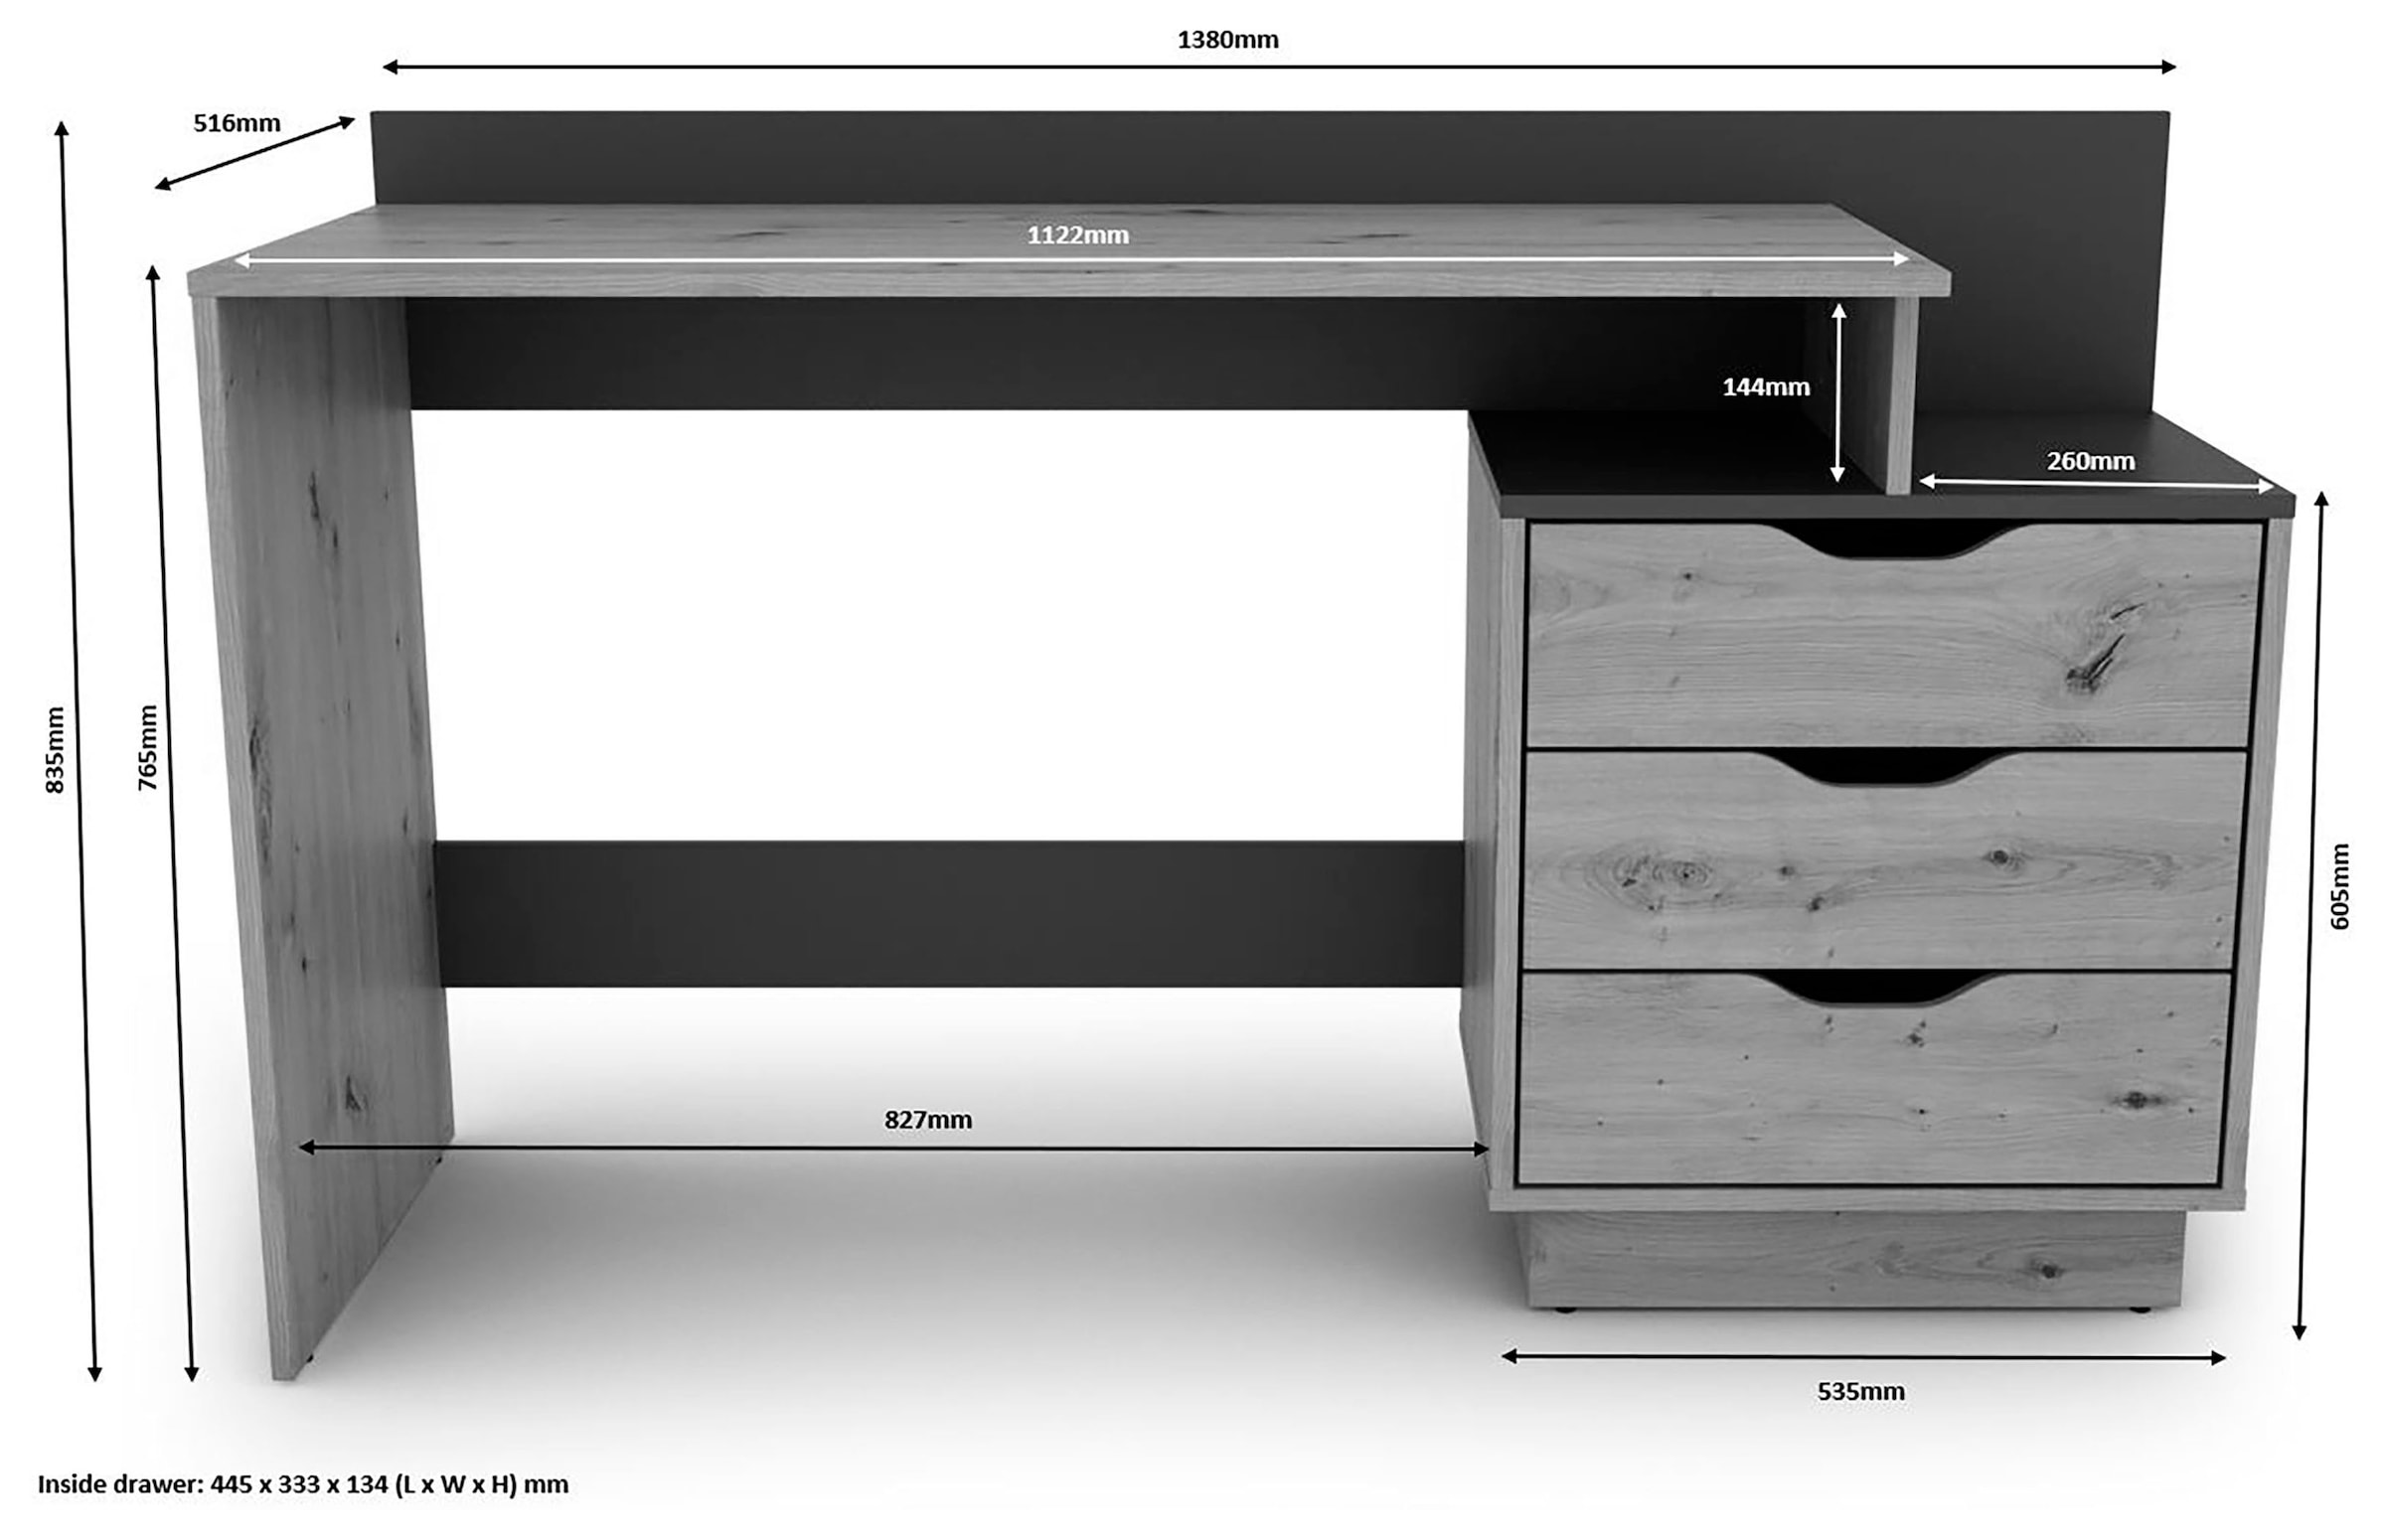 byLIVING Schreibtisch »Bern, moderner Computertisch«, mit viel Stauraum, Breite 138cm, rechts oder links montierbar